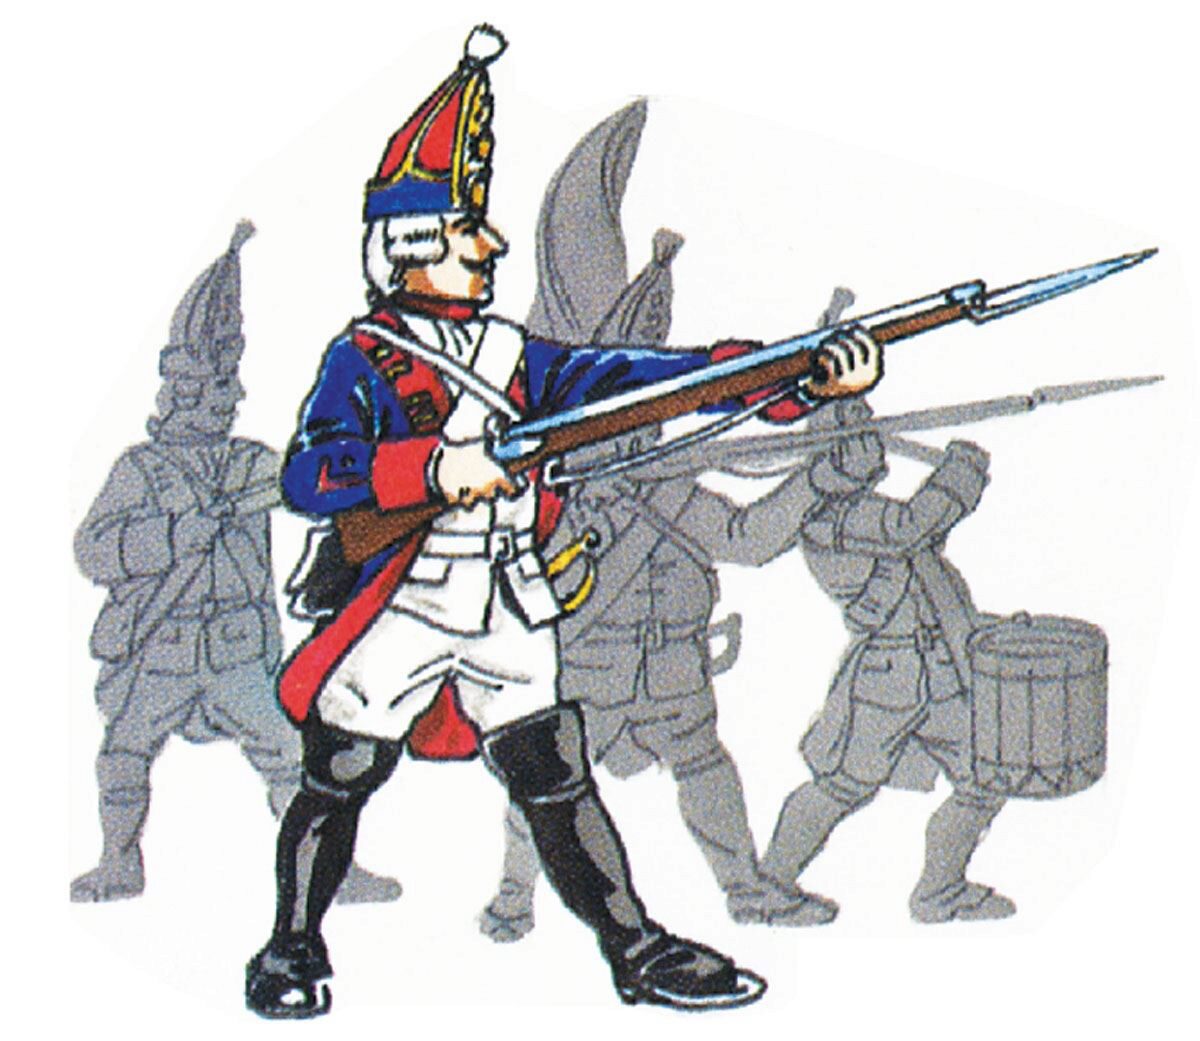 Prince August 68 Zinngiessform Battle of Rossbach - Prussia Grenadier Stehend, Gewehr ladend Preußen  1757